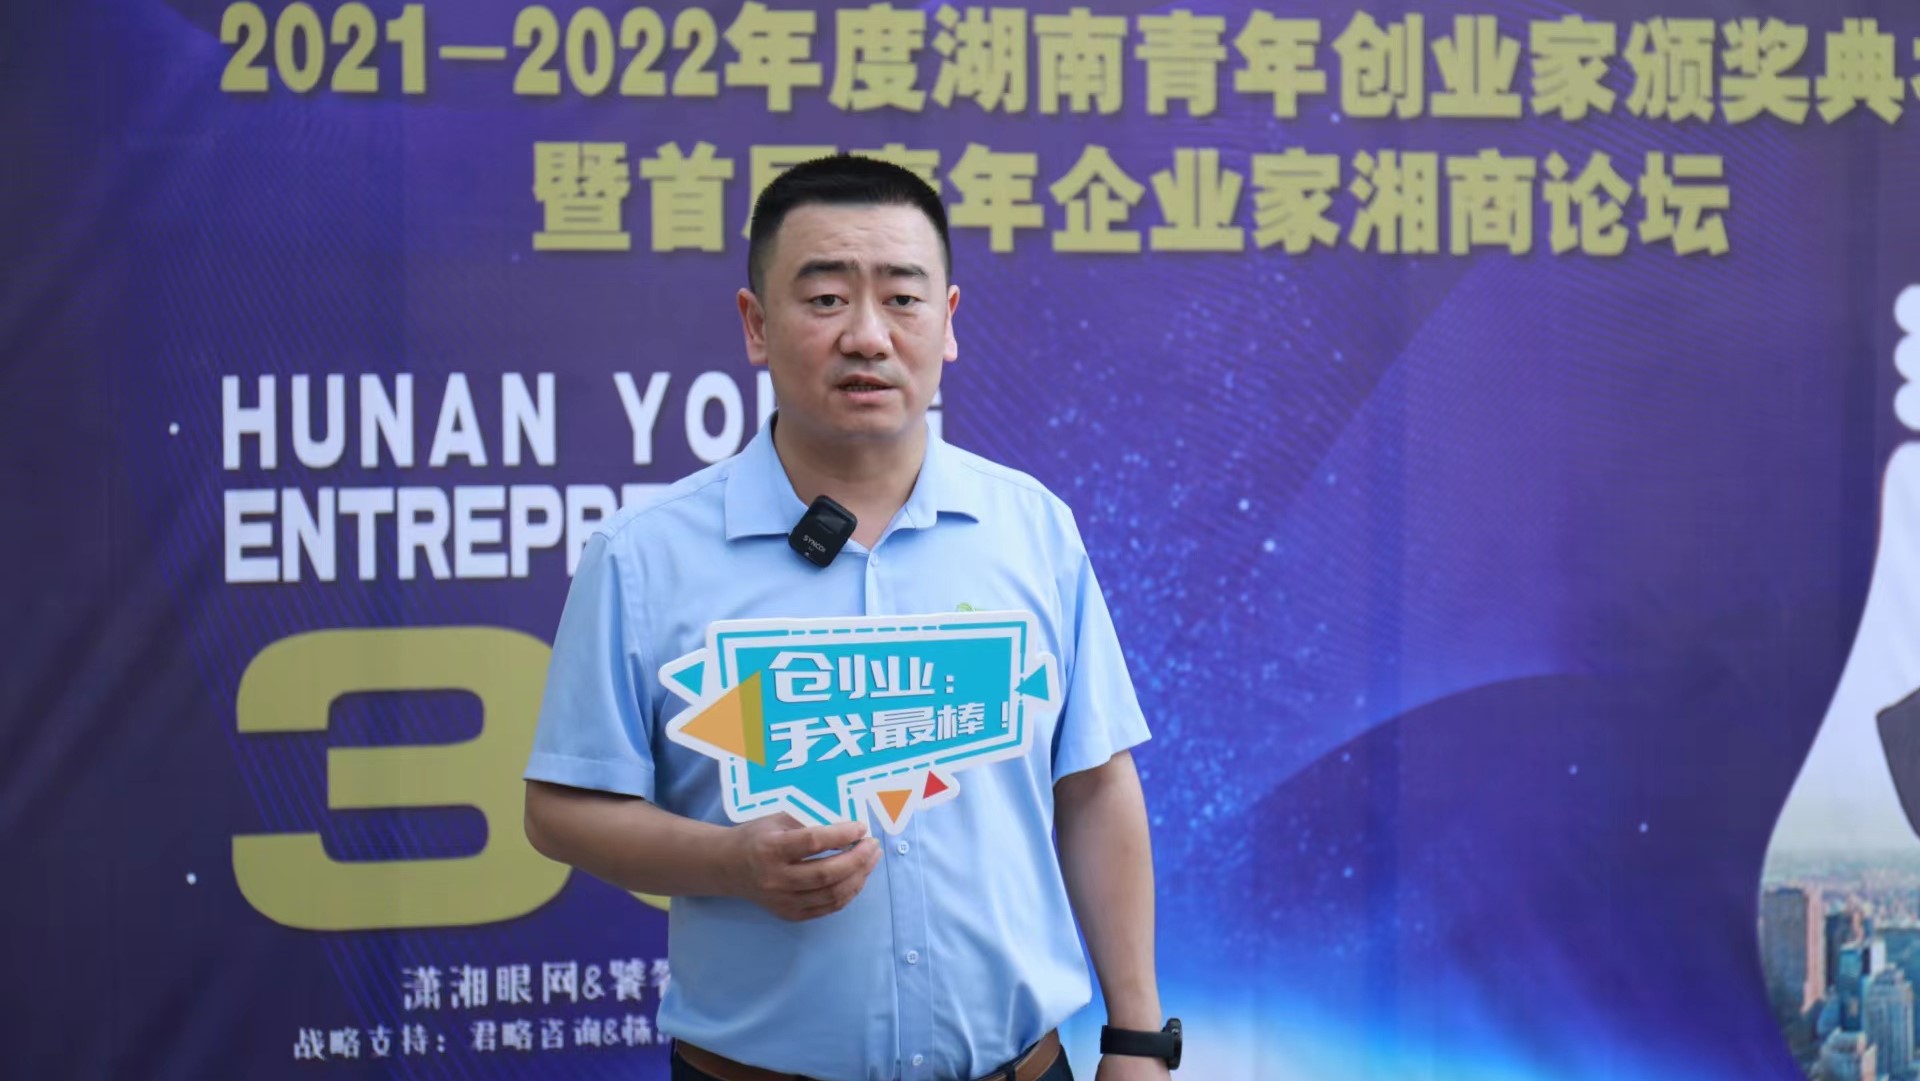 瑞德尔李应新被授予“2021-2022年度湖南青年创业家”奖